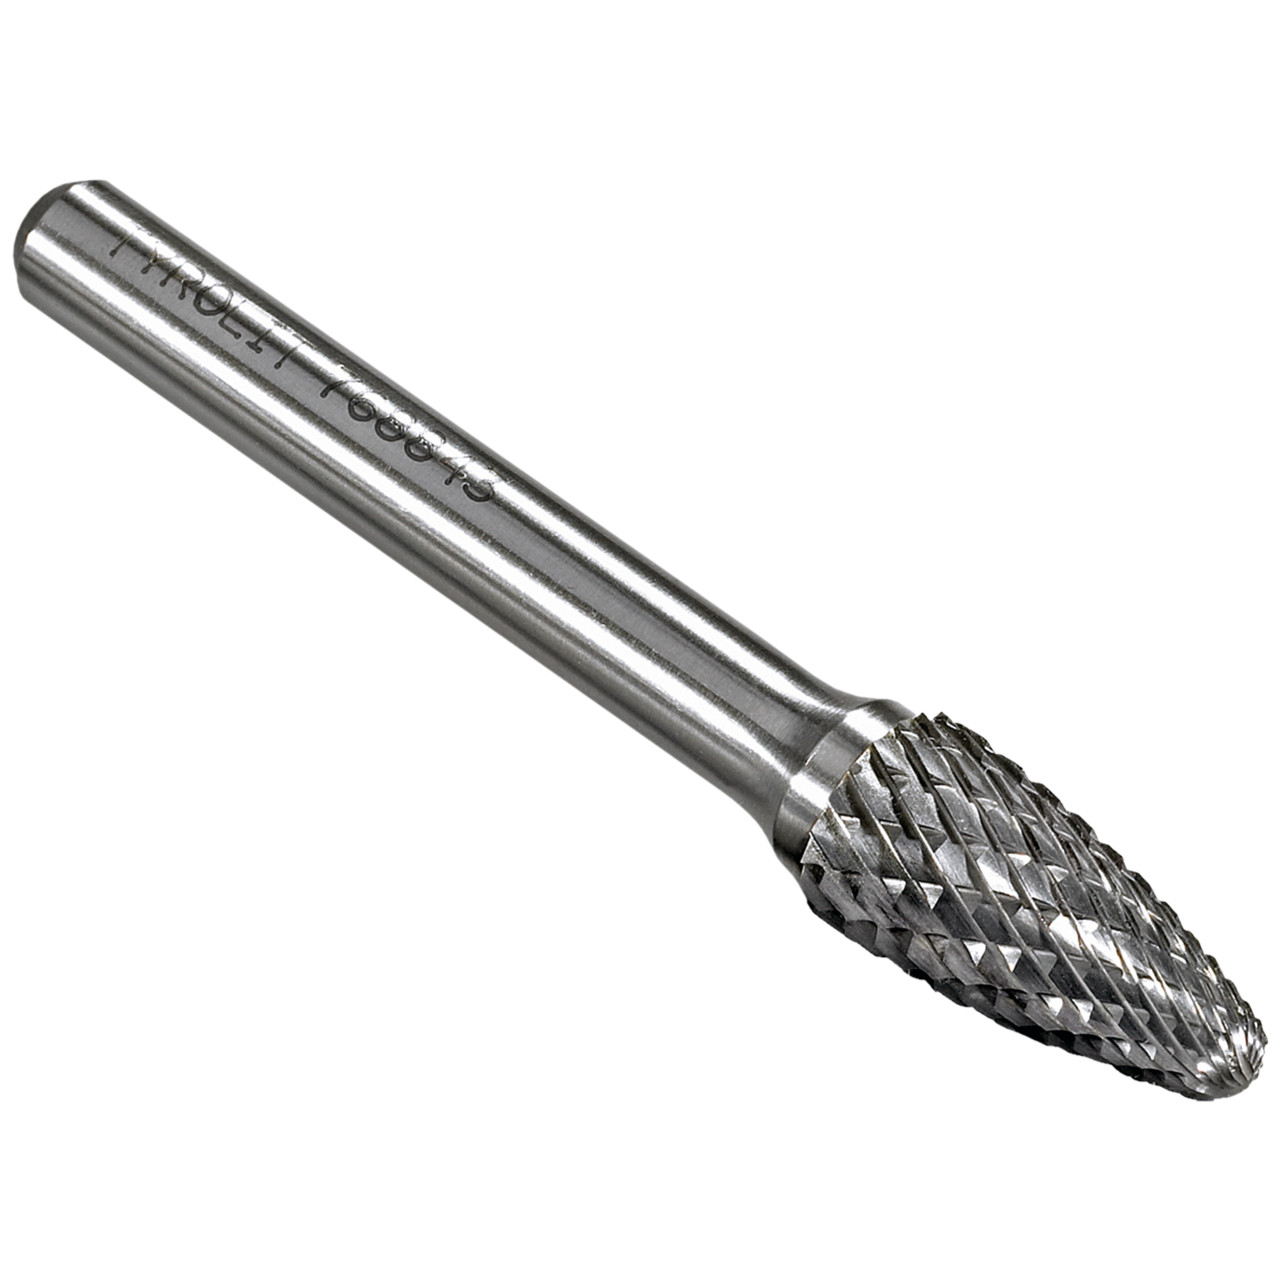 TYROLIT hardmetalen frees DxT-SxL 6x13-3x45 Voor gietijzer, staal en roestvrij staal, vorm: 52RBF - boom, Art. 766156